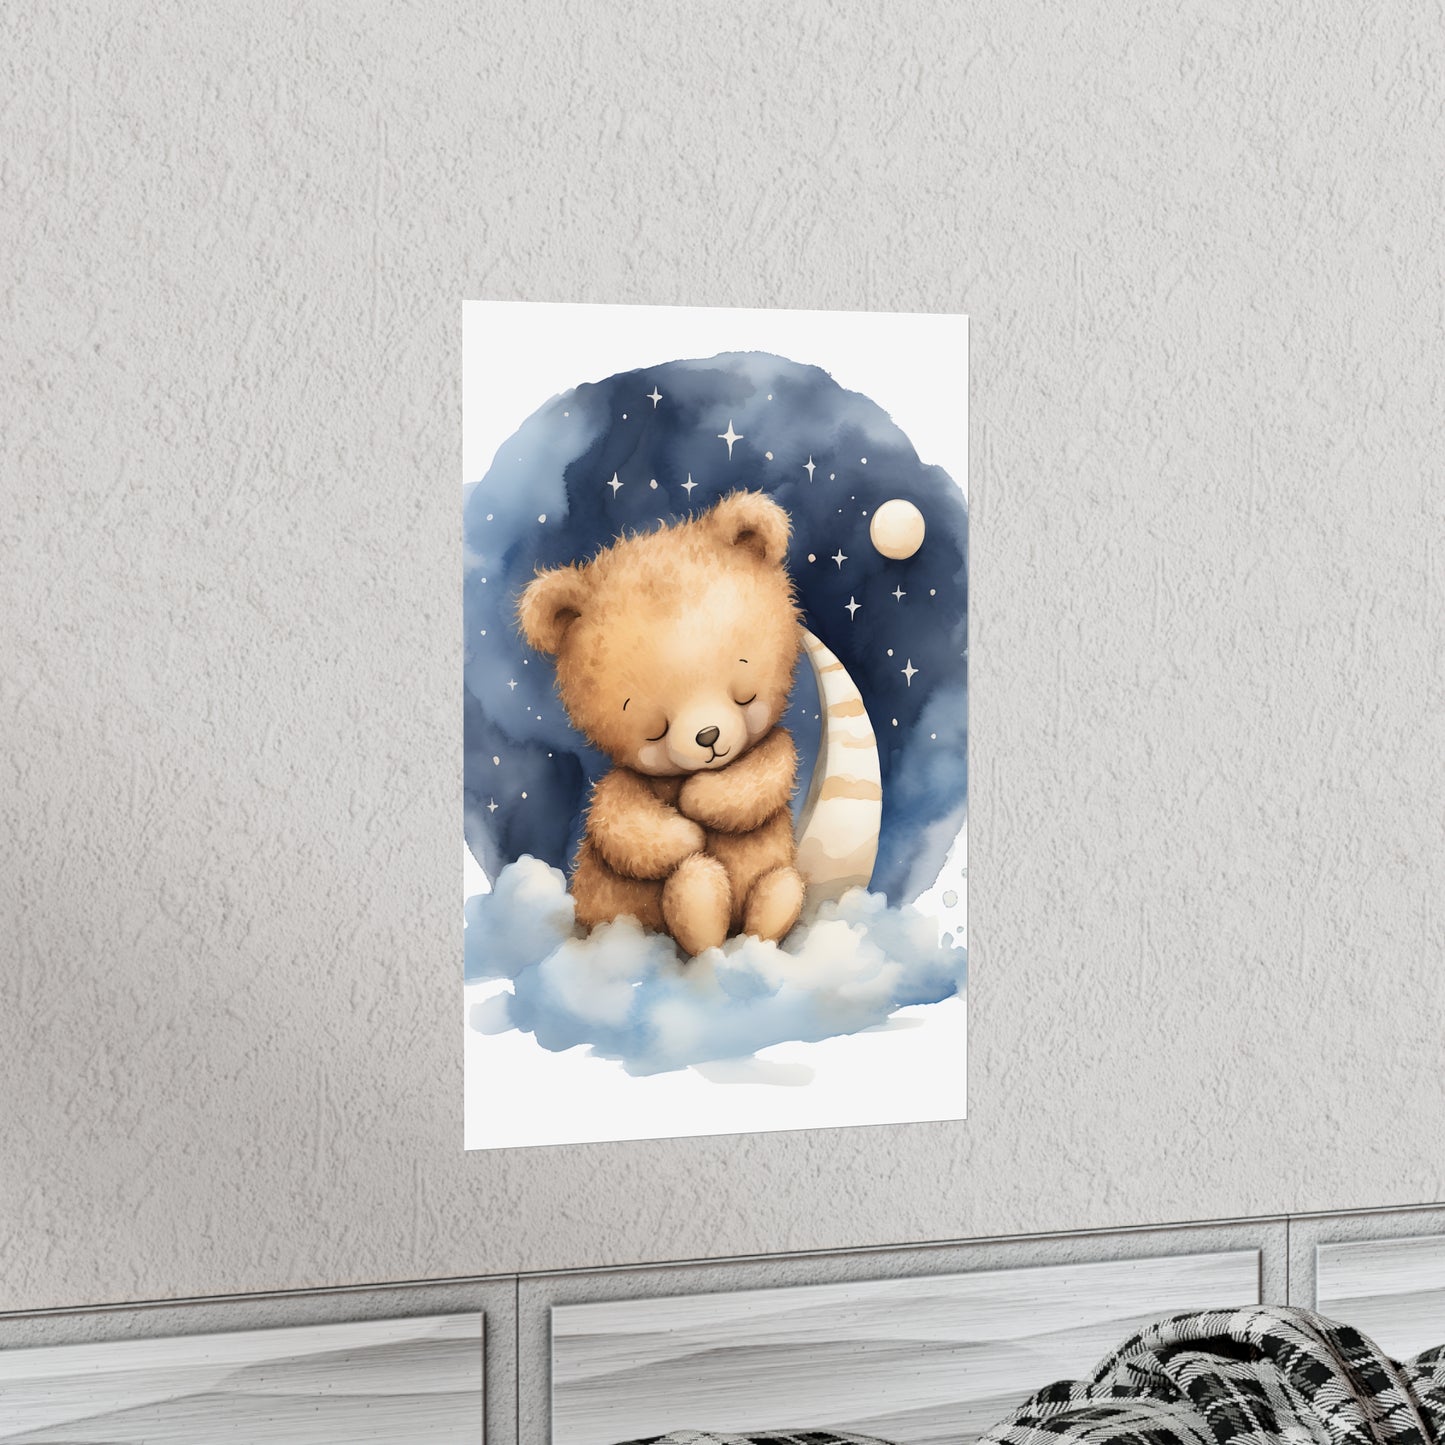 Sleeping Bear, Baby Room Wall Art, Nursery Decor, Bear Nursery Decor, sleeping animals, Animals Nursery Art, Nursery Décor,Teddy Bear Print - CosmicDeva